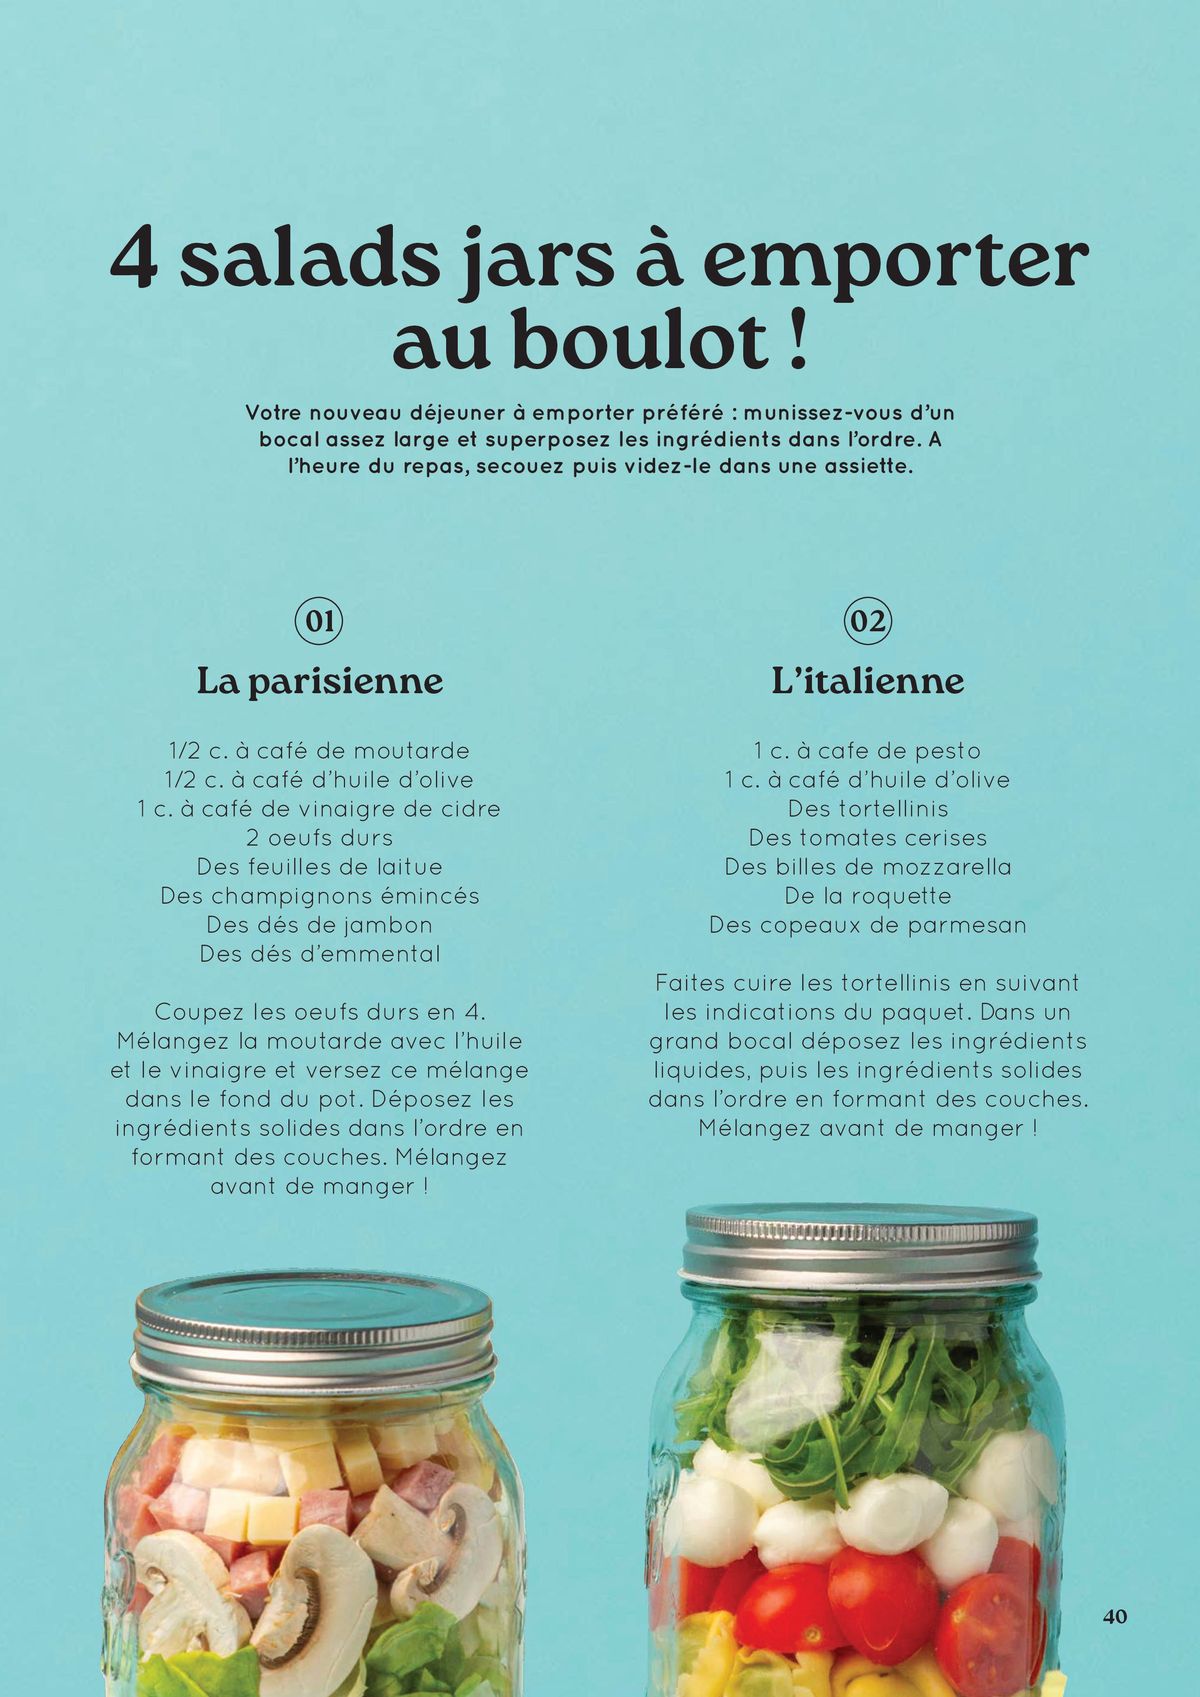 Catalogue Du Bruit dans la Cuisine Recettes, page 00040